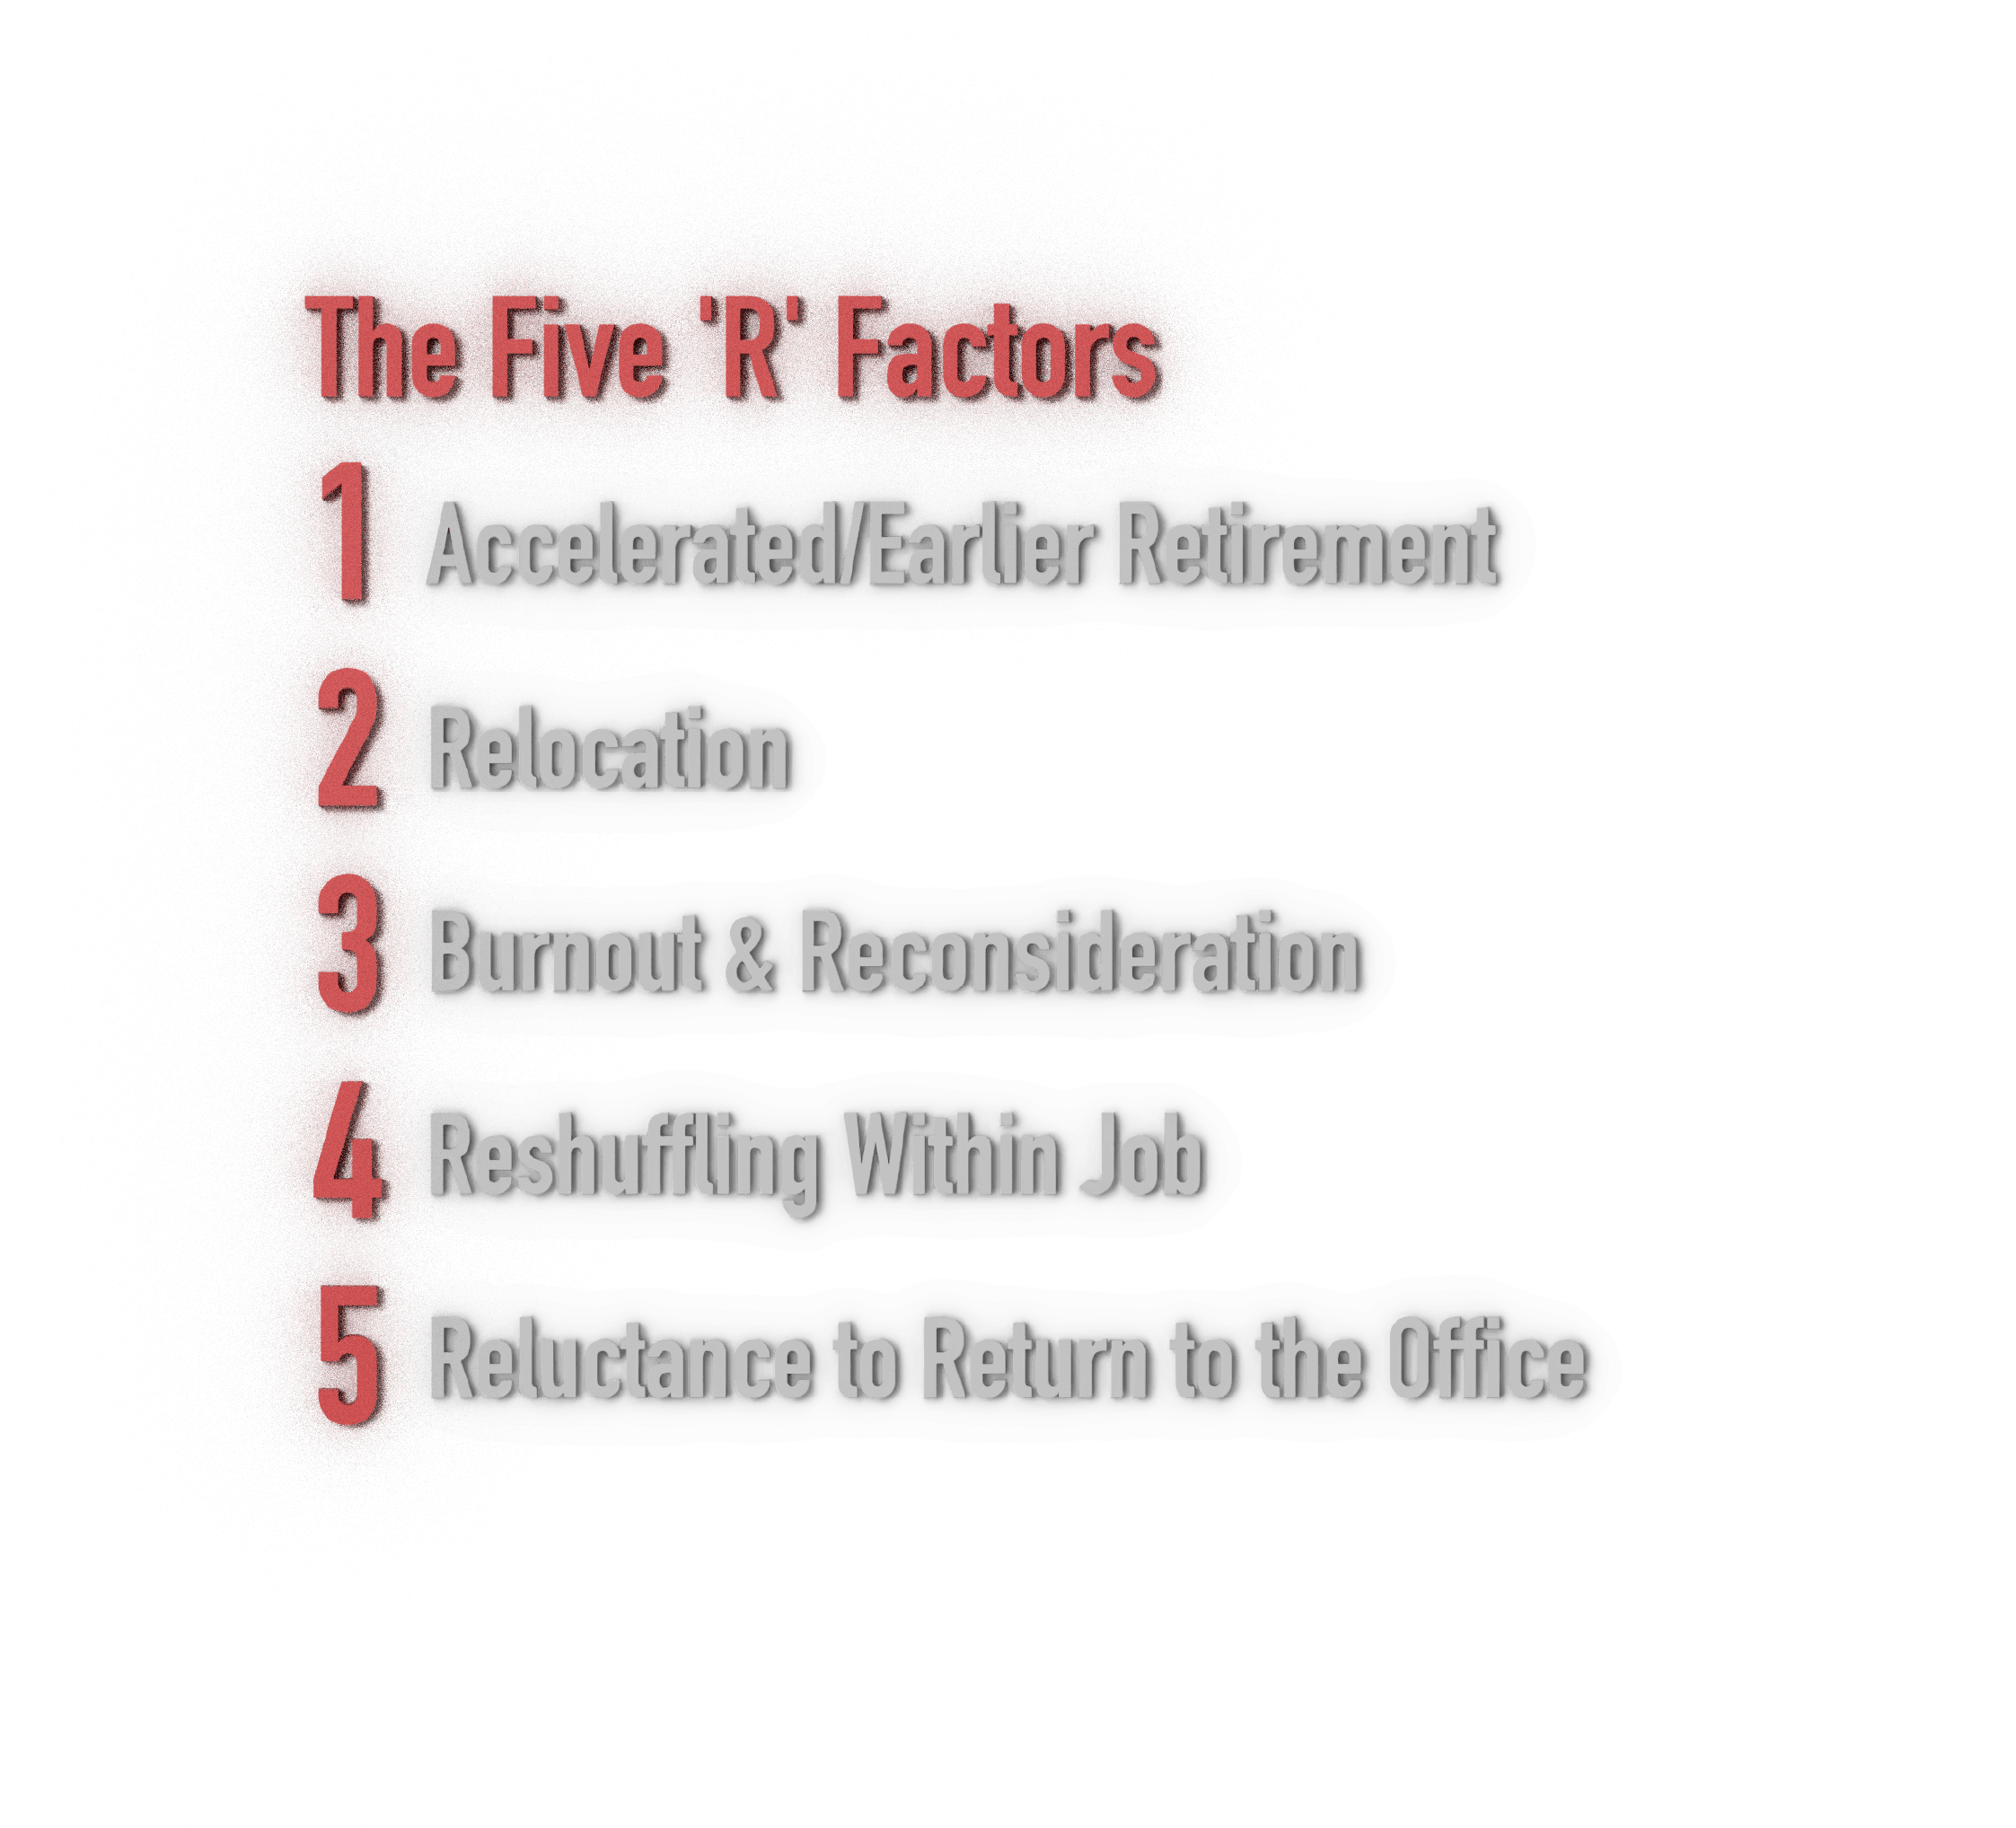 Graphic describing the "Five R Factors"